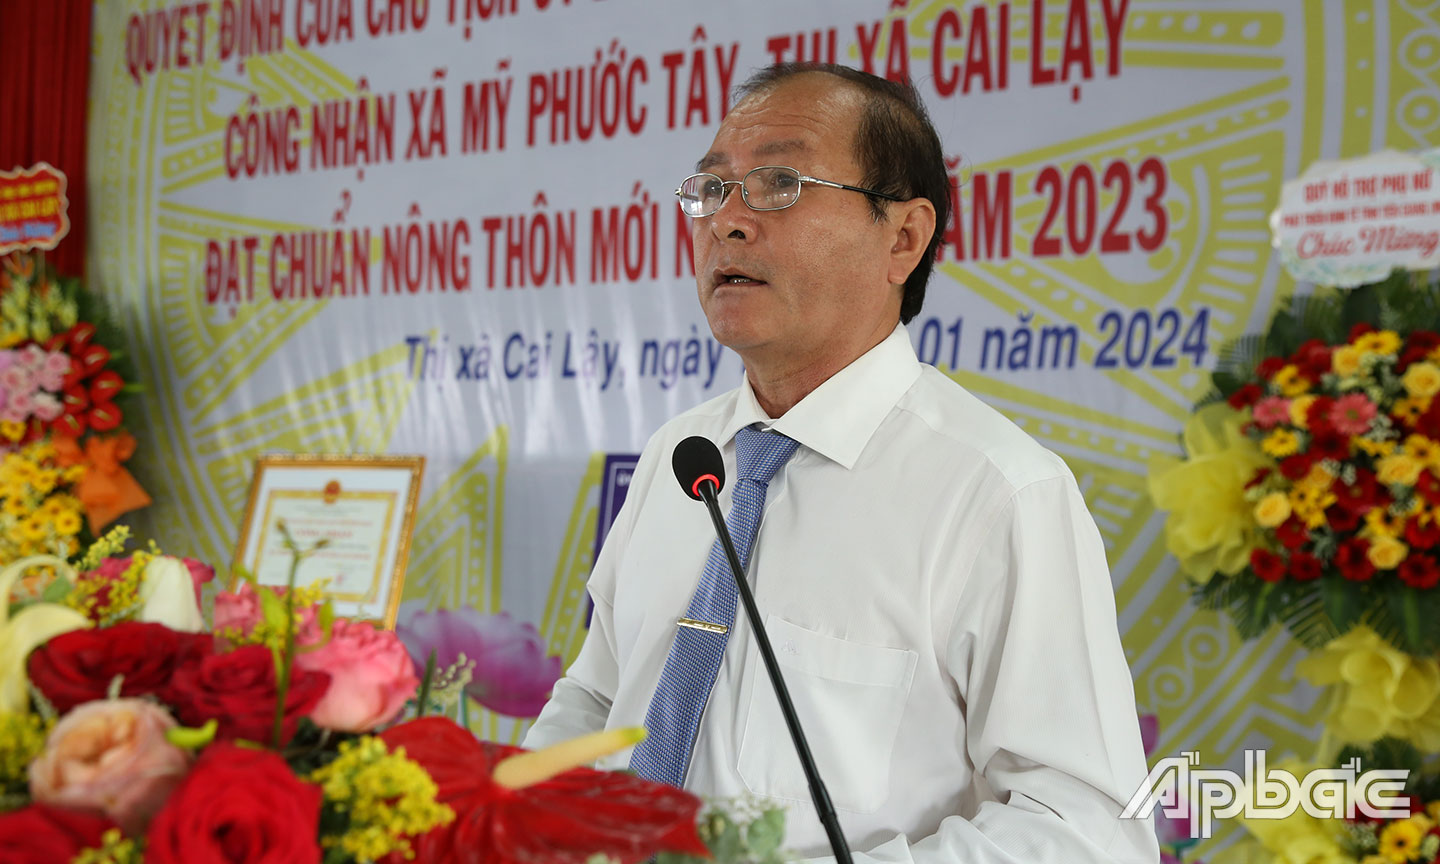 Đồng chí Trần Văn Thức phát biểu tại buổi lễ.